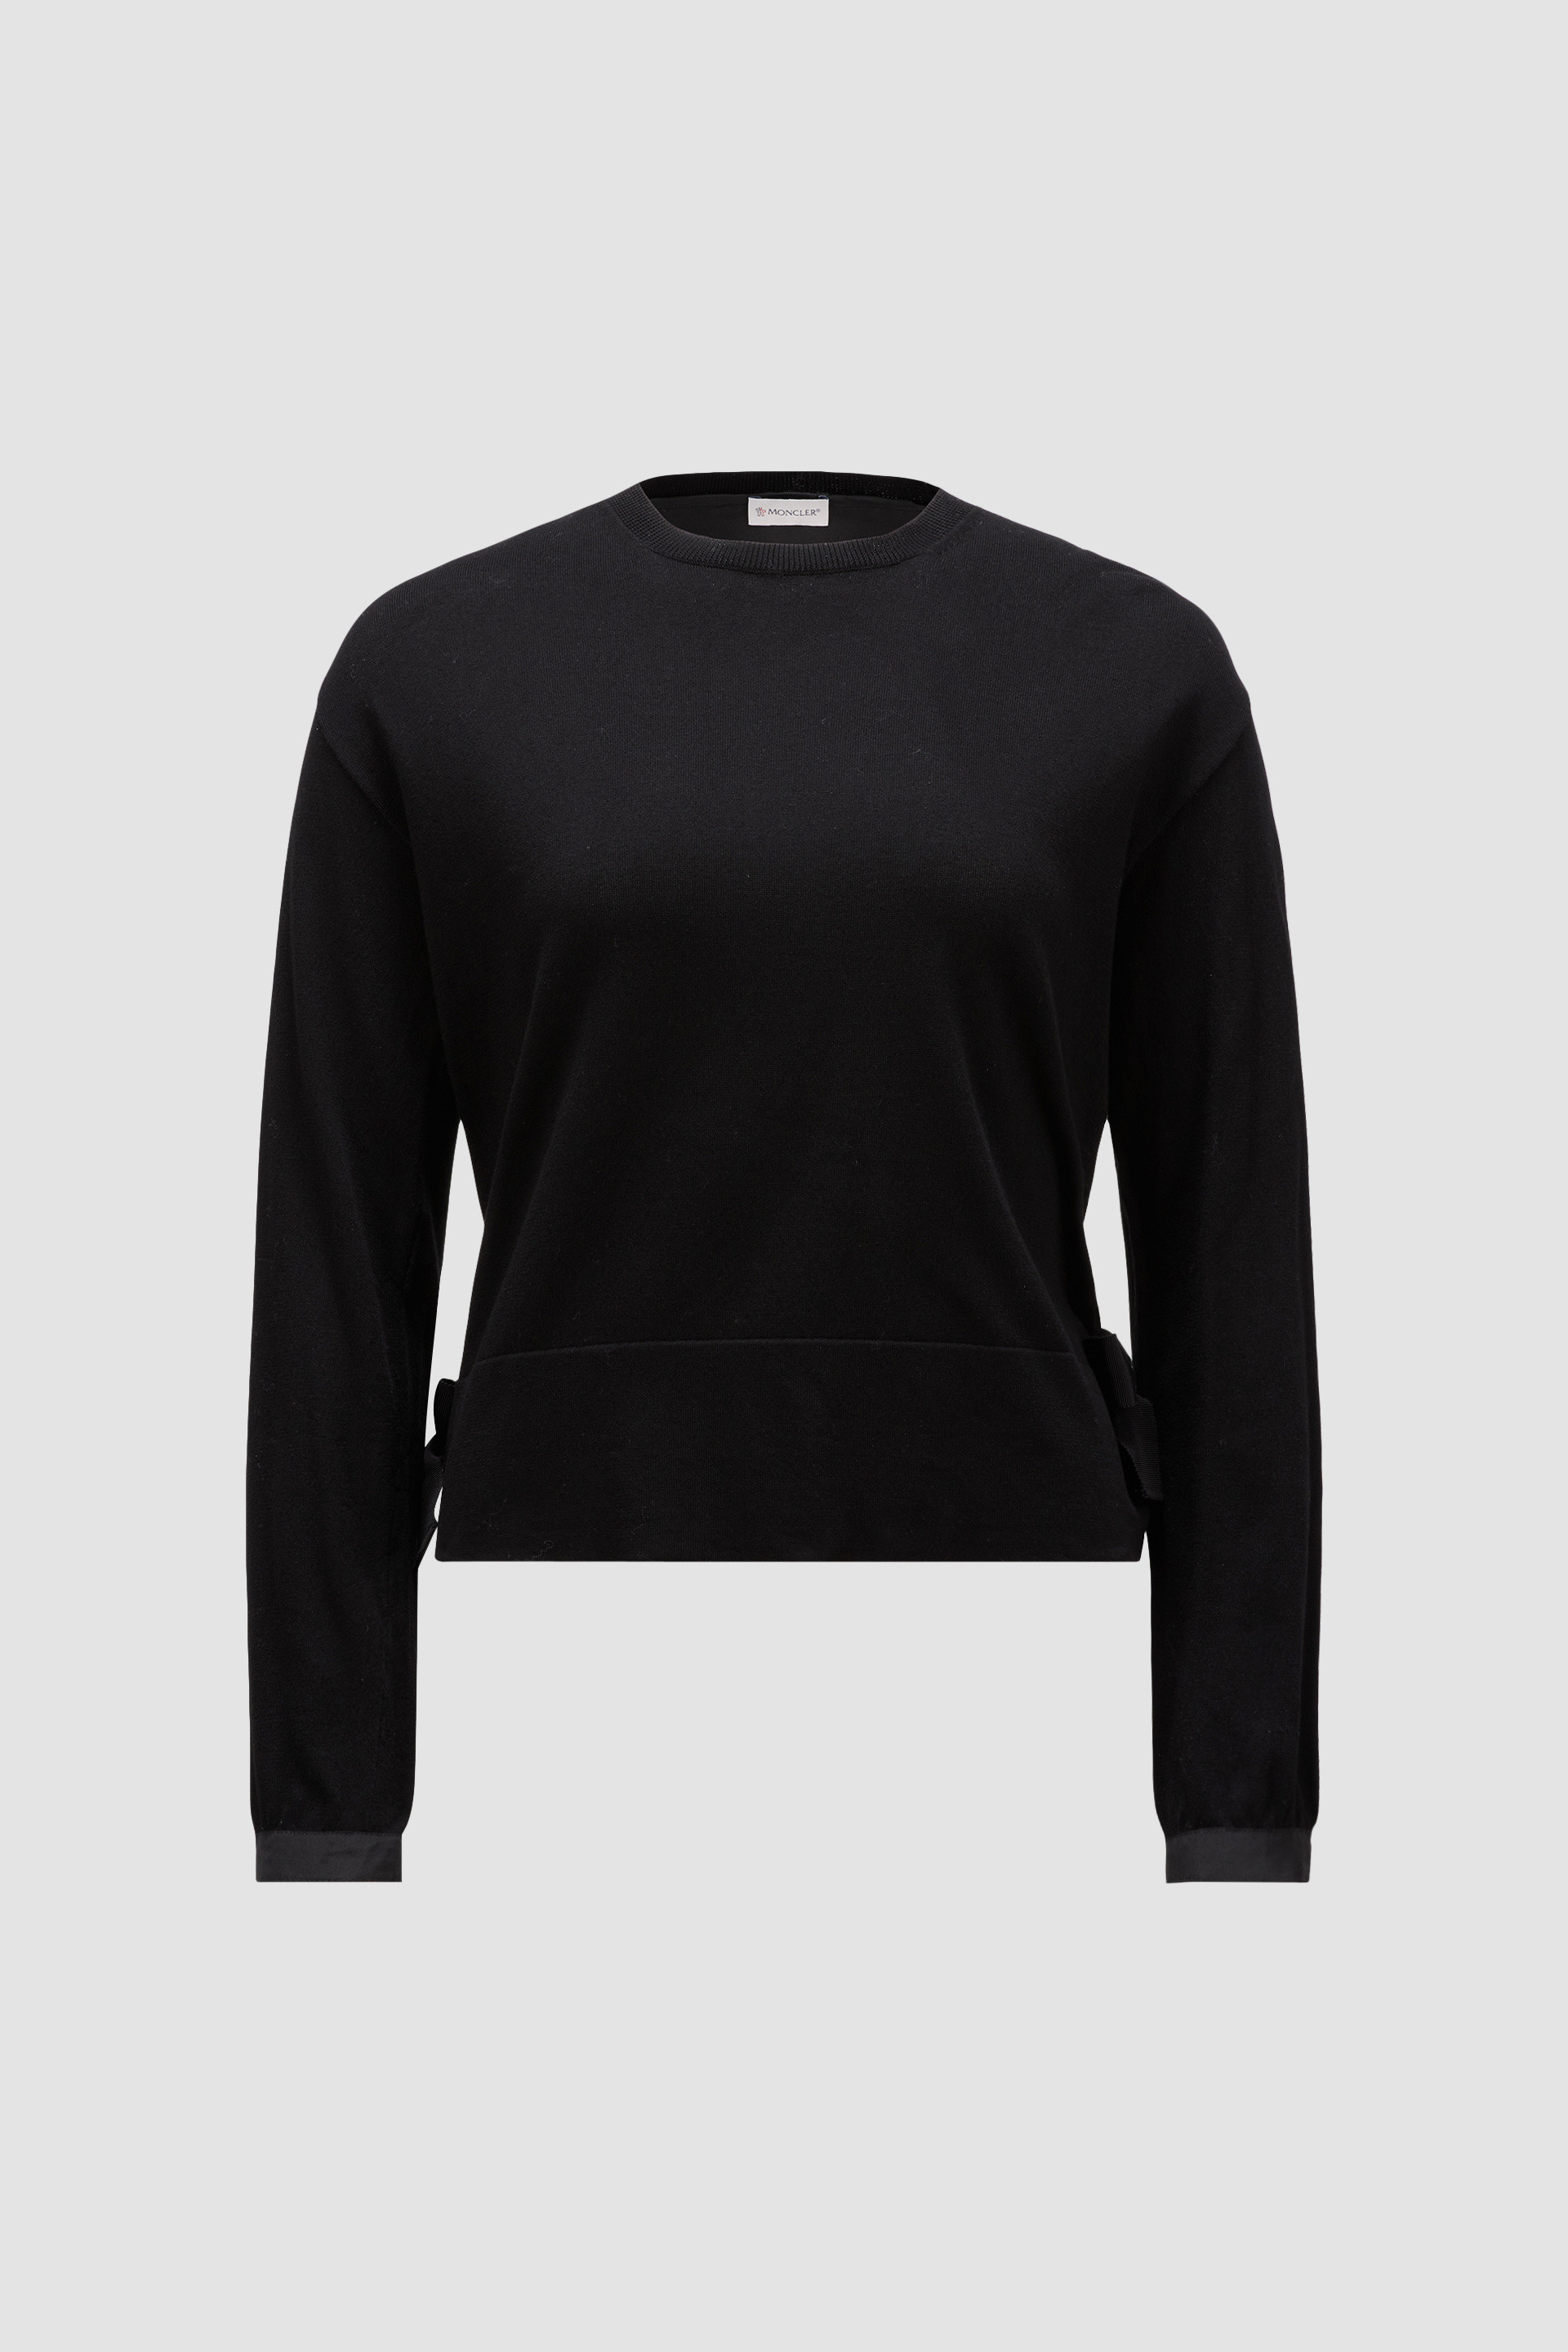 ブラック セーター : セーター＆カーディガン 向けの レディース 